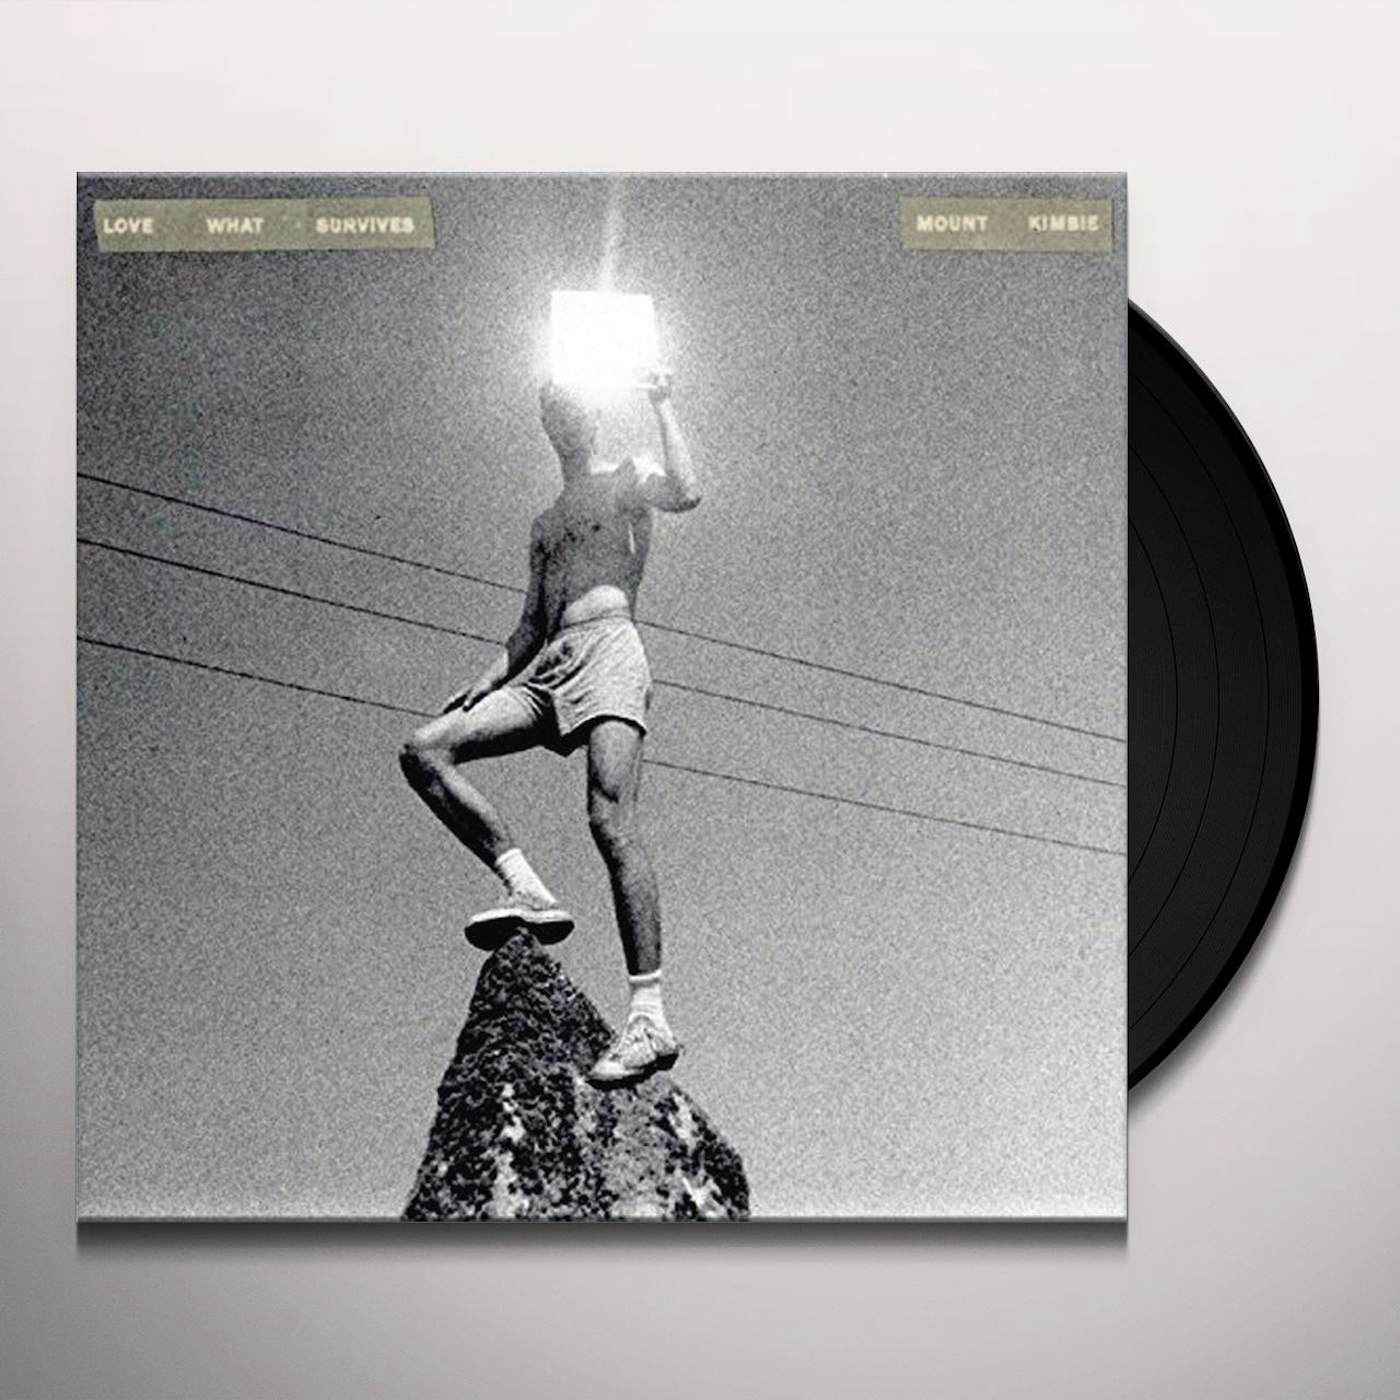 Mount Kimbie LOVE WHAT SURVIVES REMIXES PART 1 Vinyl Record